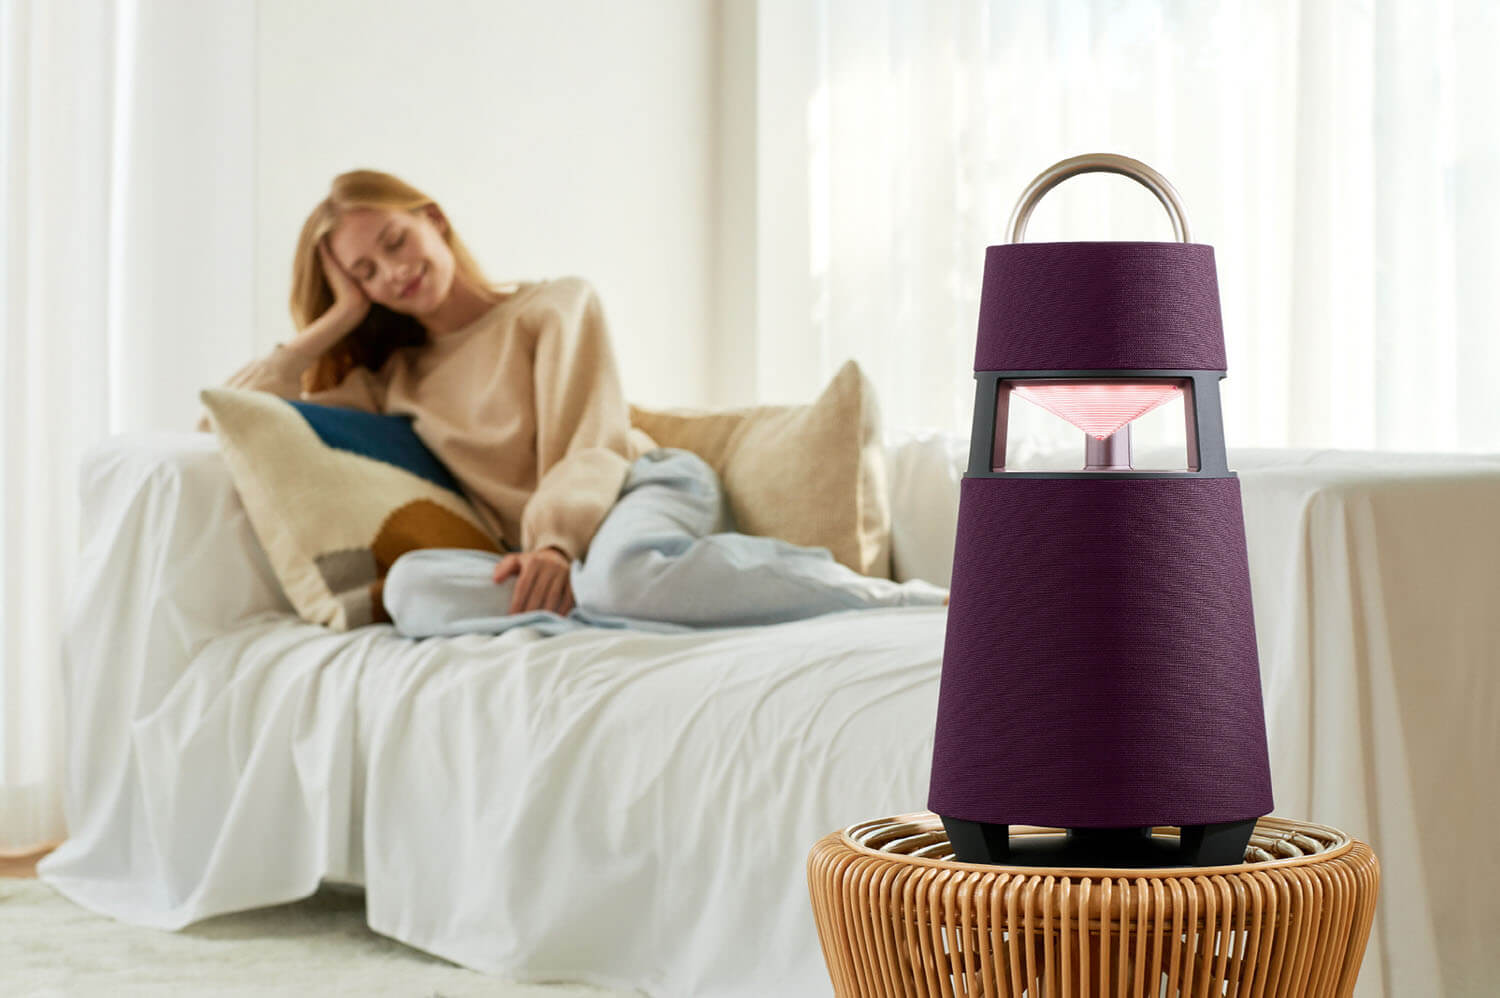 LG XBOOM 360 wireless speaker in the bedroom.